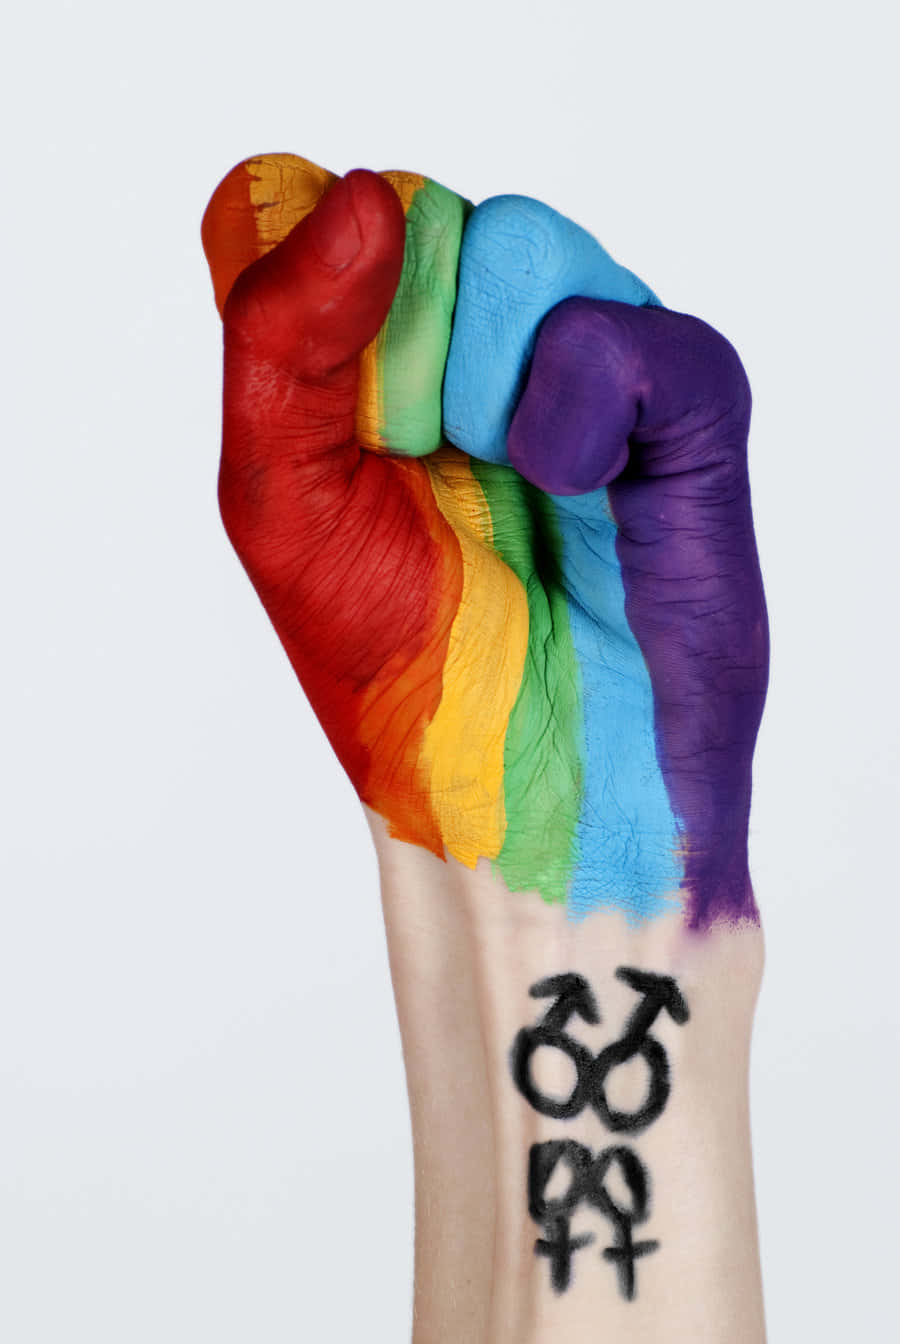 Fejr din stolthed og vis dine farver med denne smukke LGBT iPhone tapet. Wallpaper